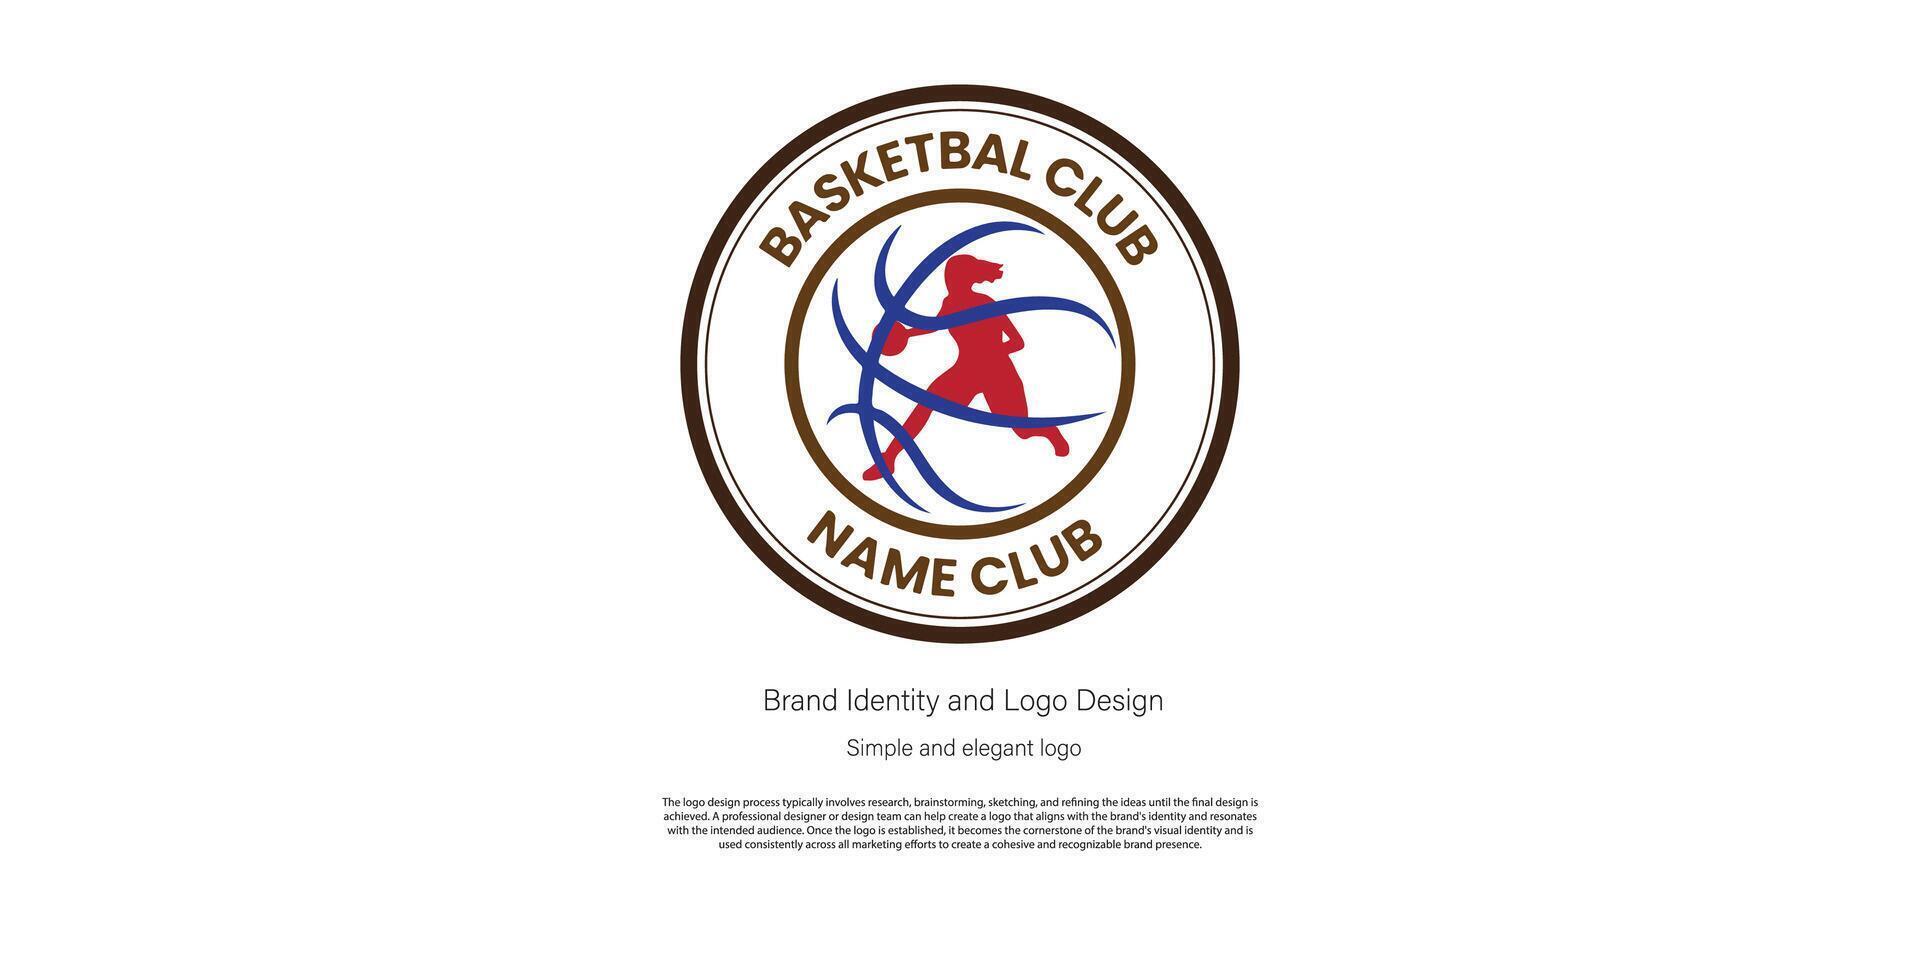 pallacanestro logo design per club o logo progettista vettore